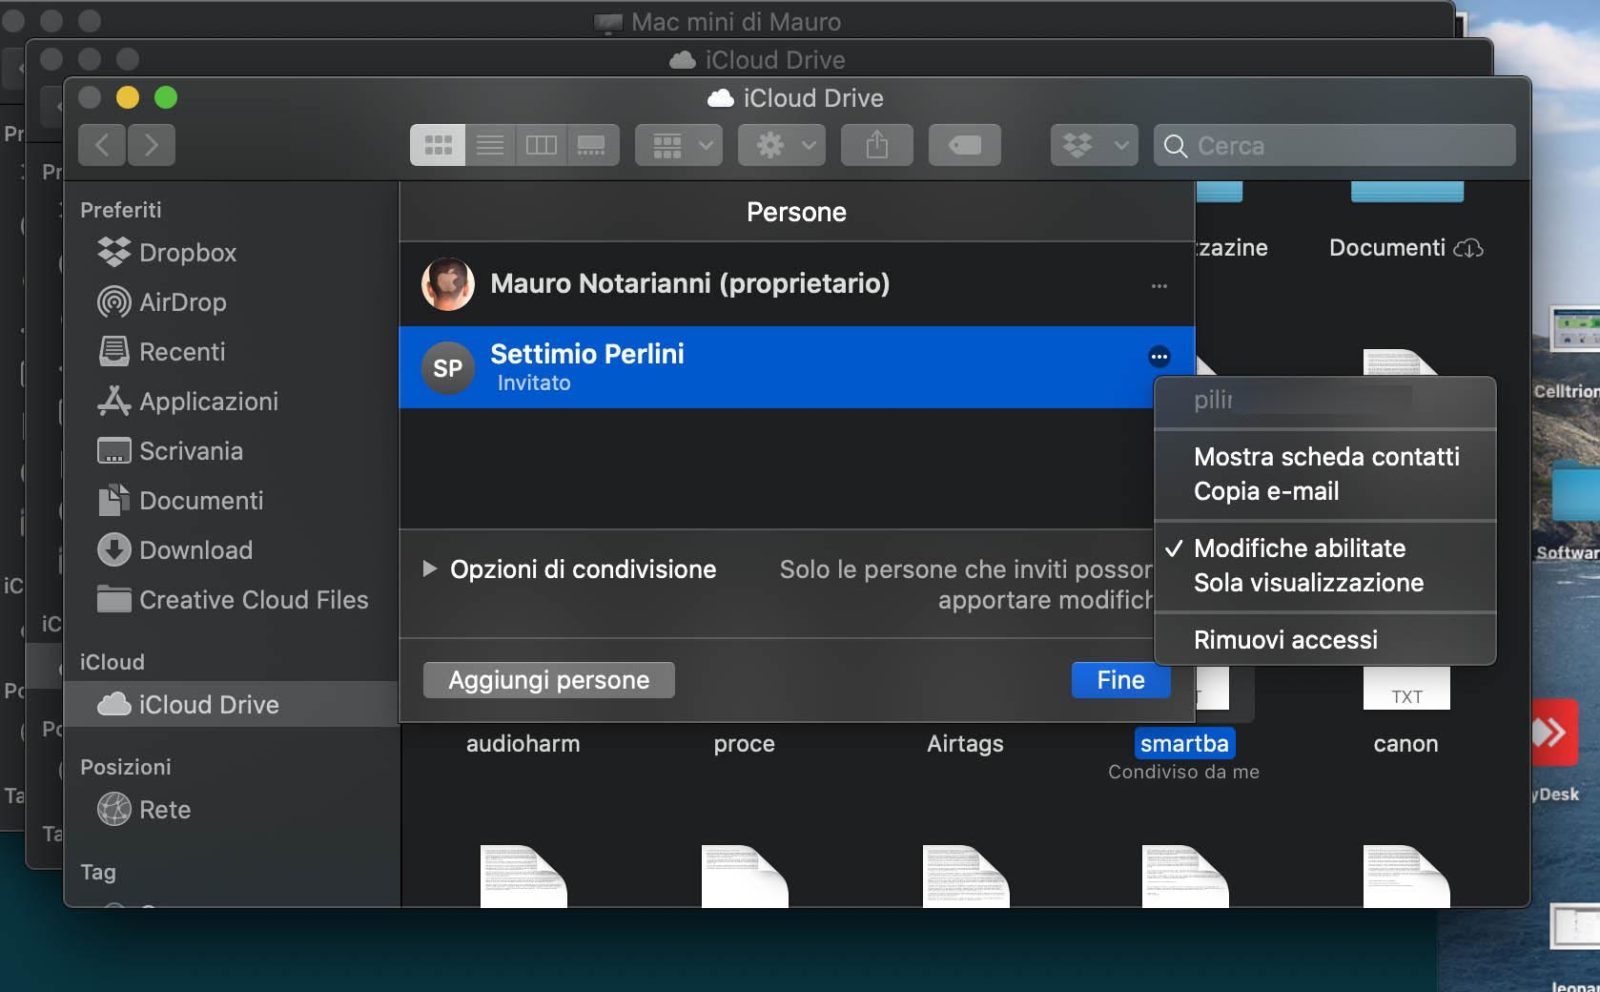 macOS 10.15.4, come funziona la condivisione delle cartelle di iCloud Drive dal Finder